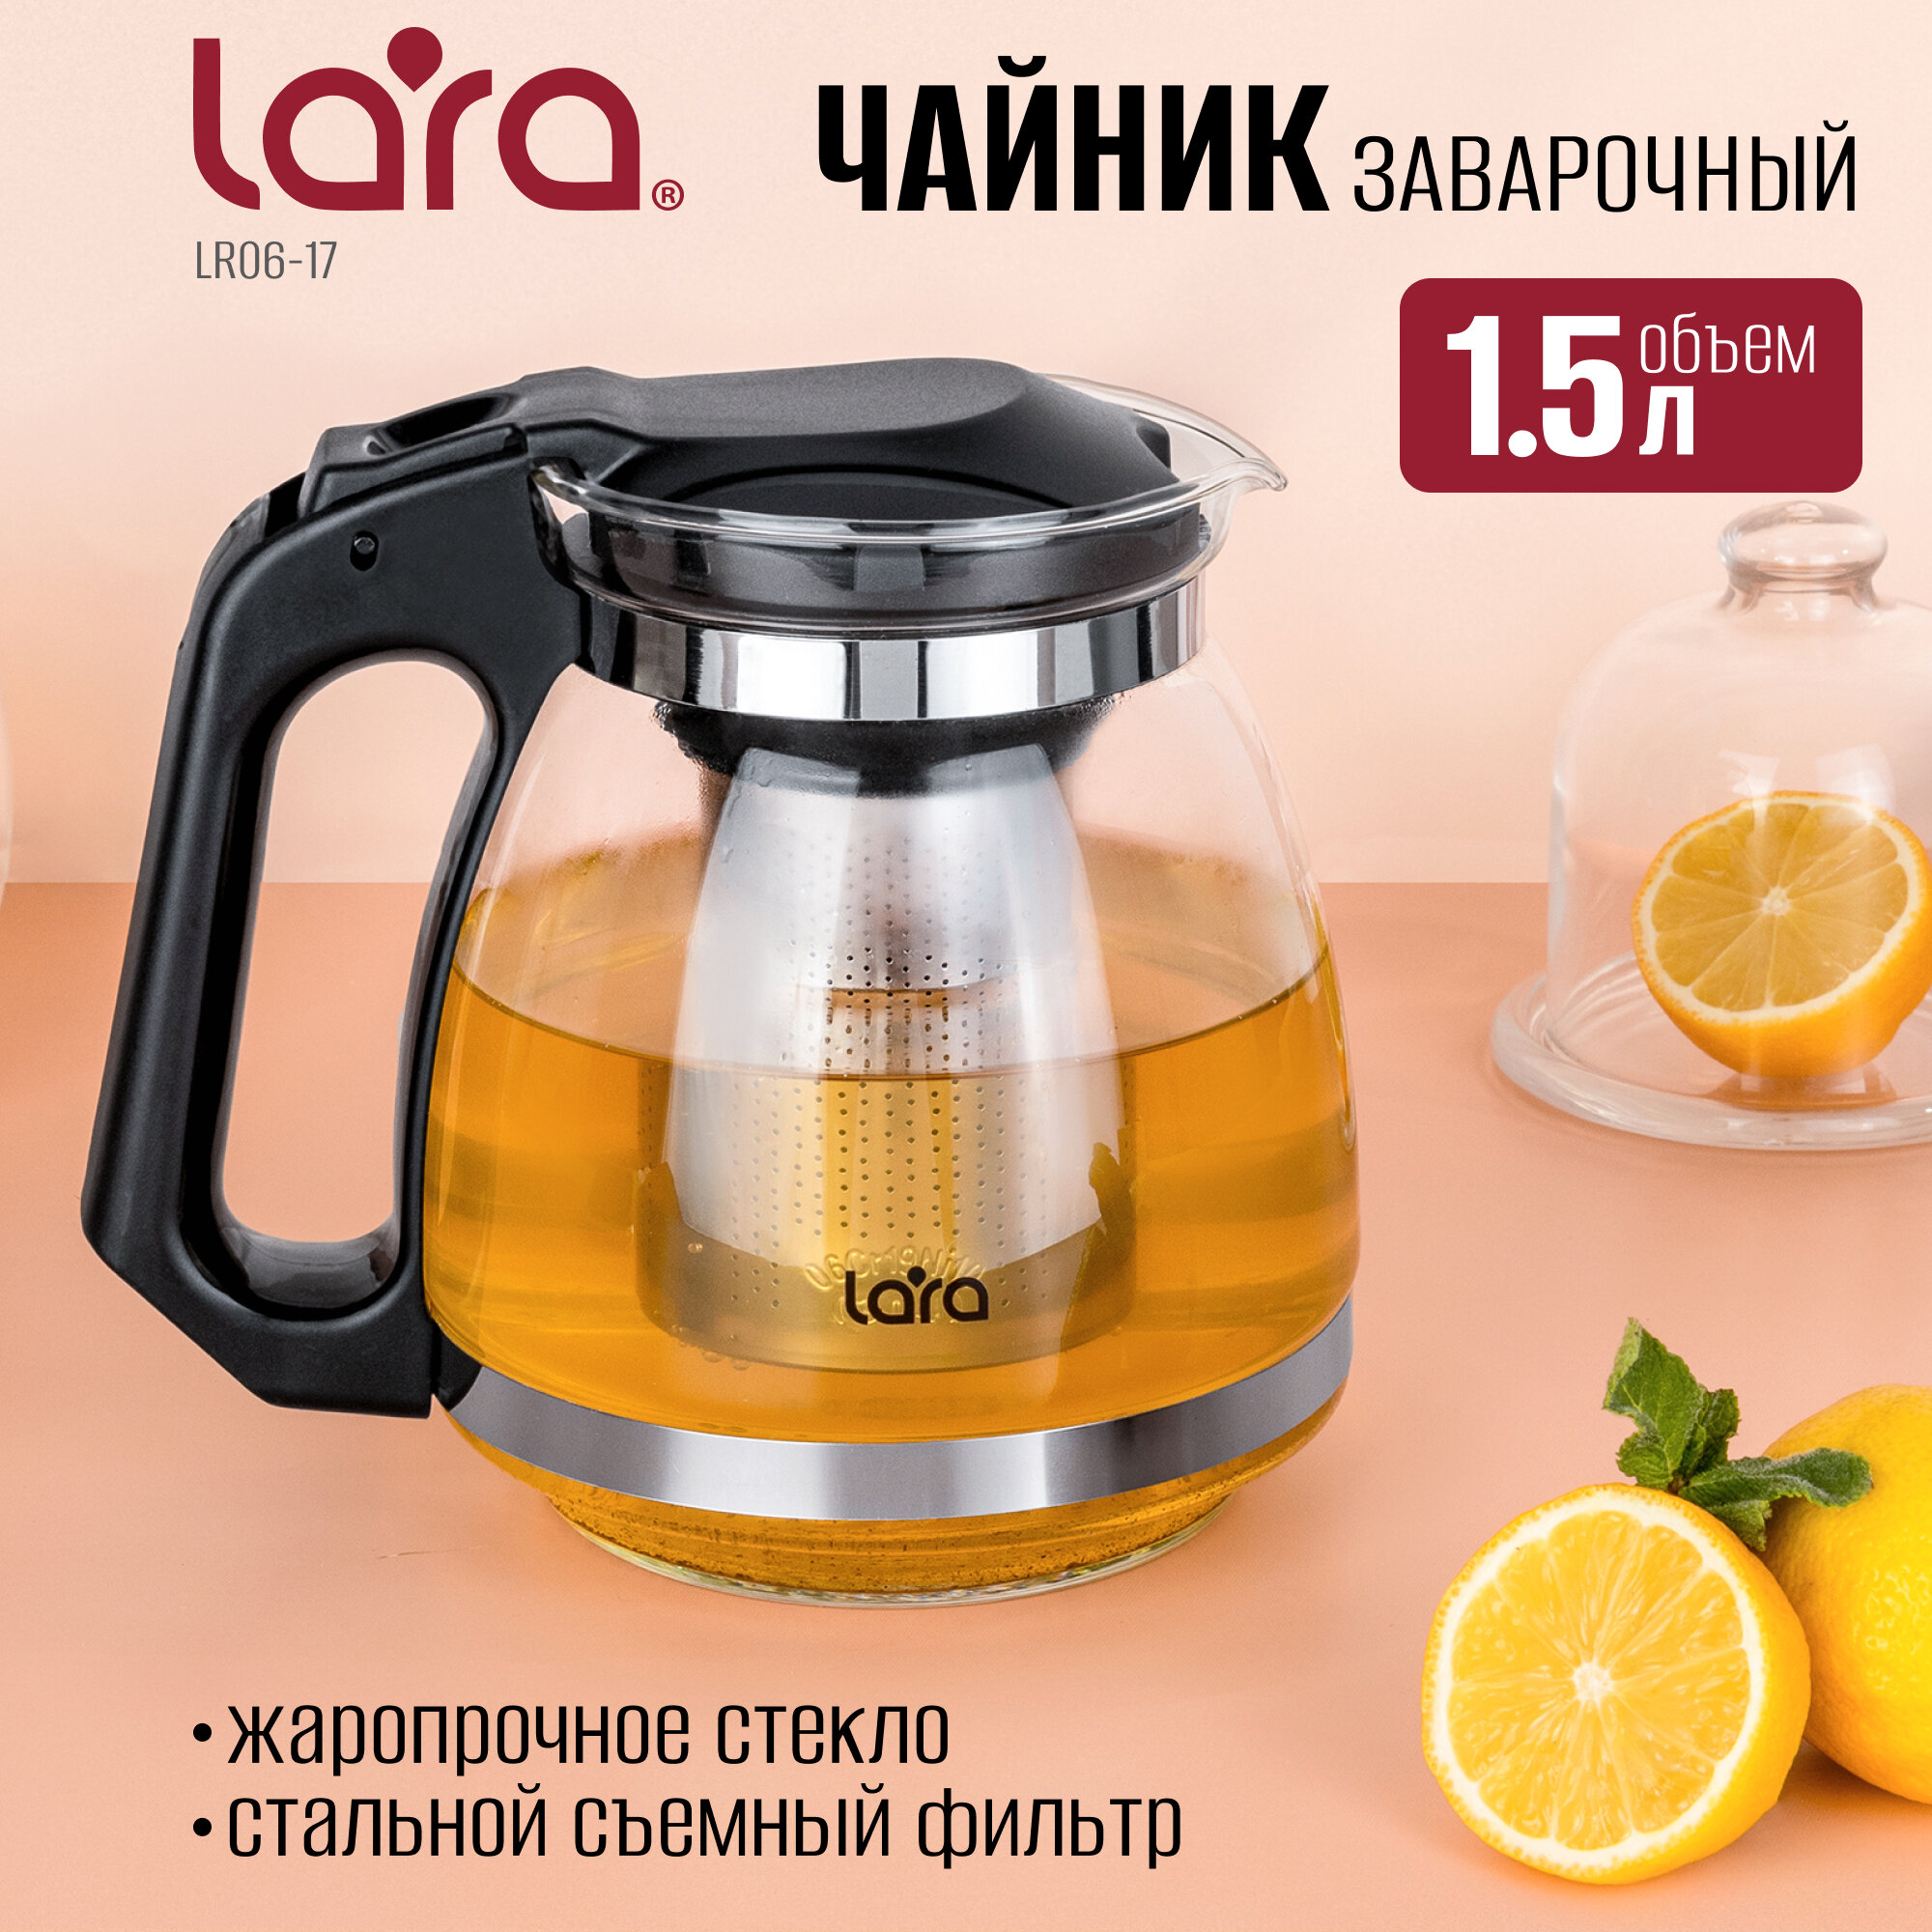 Чайник заварочный стеклянный LARA LR06-17/ 1.5 л/ стальной фильтр/ подъем крышки